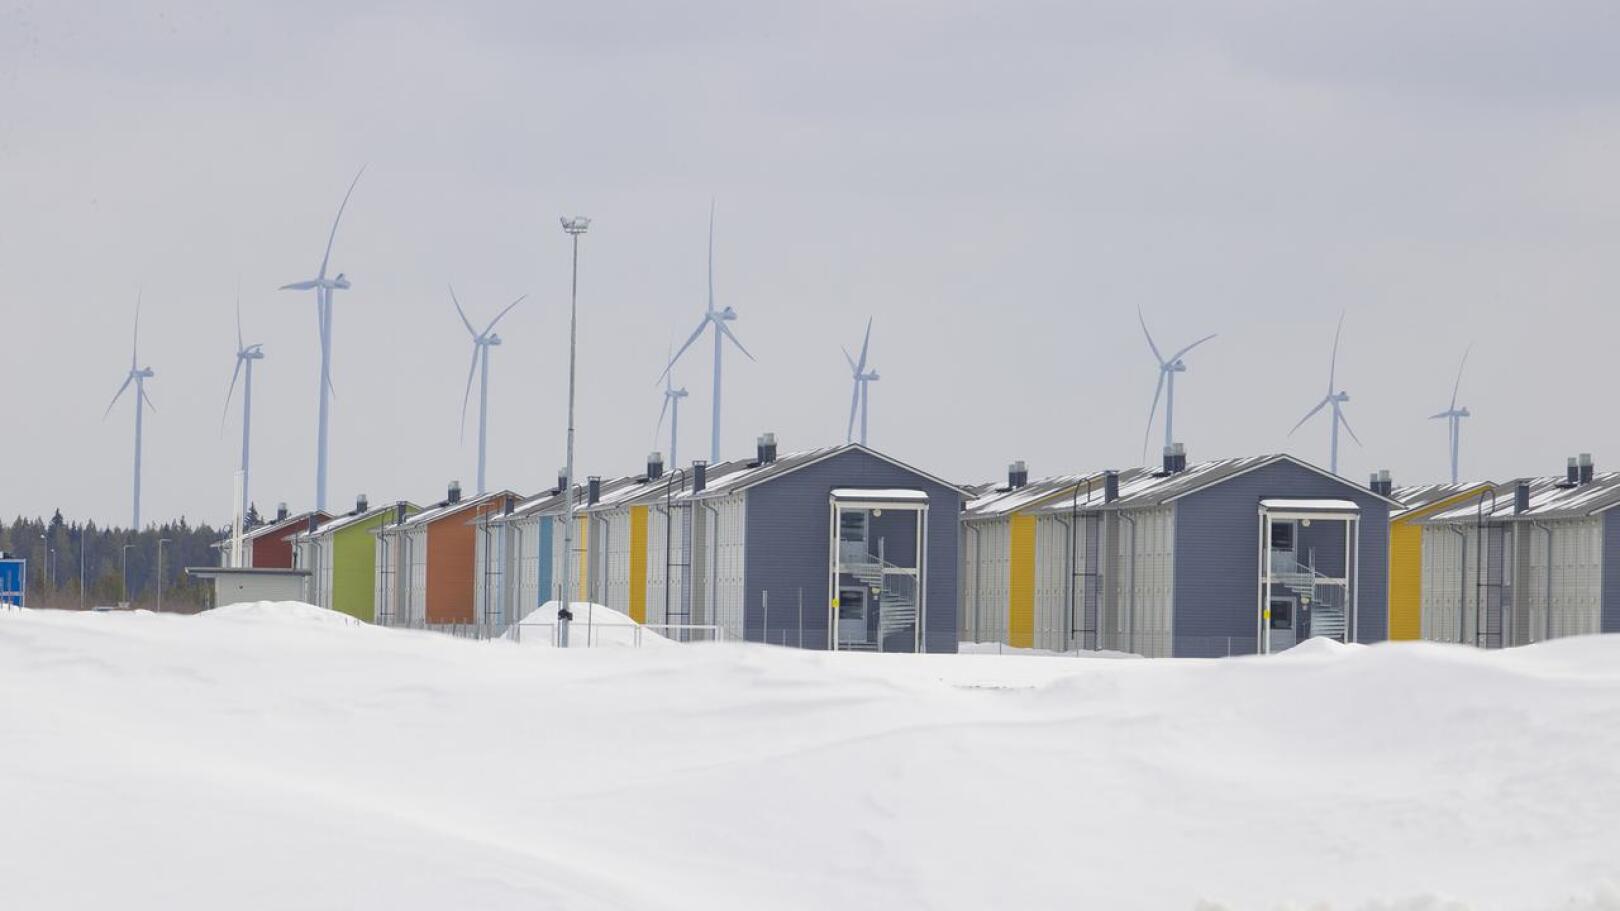 Työntekijät asuvat työmaa-alueen lähellä kerrostaloissa. Taustalla on Pyhäjoella sijaitsevia tuulivoimaloita.